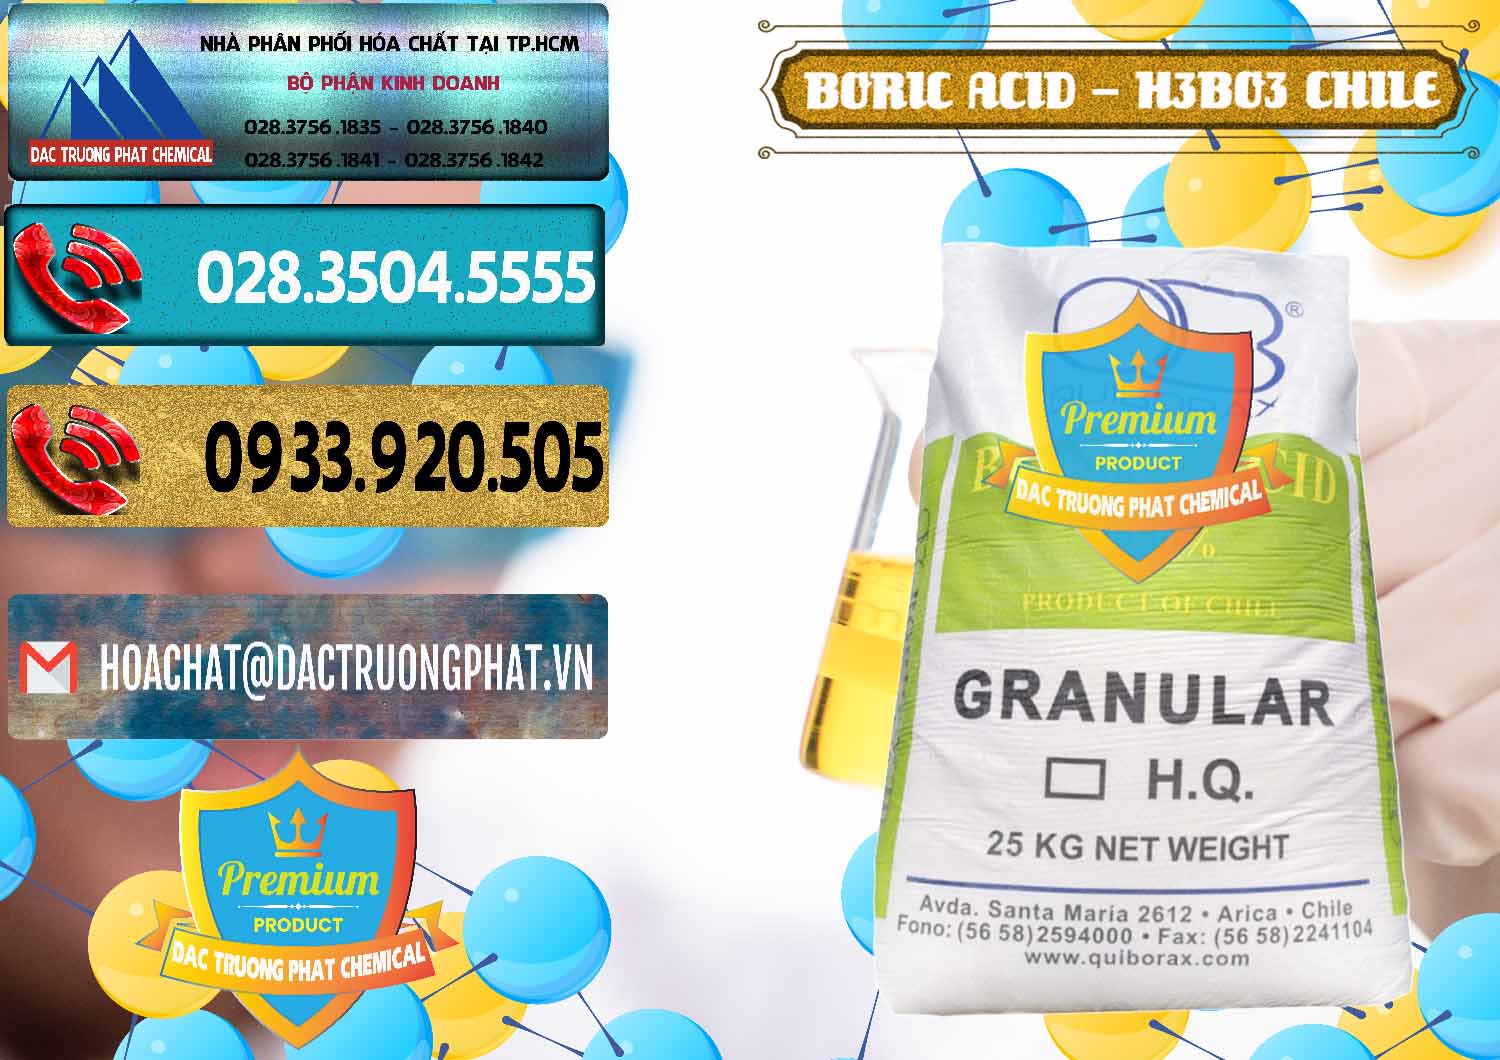 Chuyên phân phối & bán Acid Boric – Axit Boric H3BO3 99% Quiborax Chile - 0281 - Đơn vị chuyên cung cấp ( kinh doanh ) hóa chất tại TP.HCM - hoachatdetnhuom.com